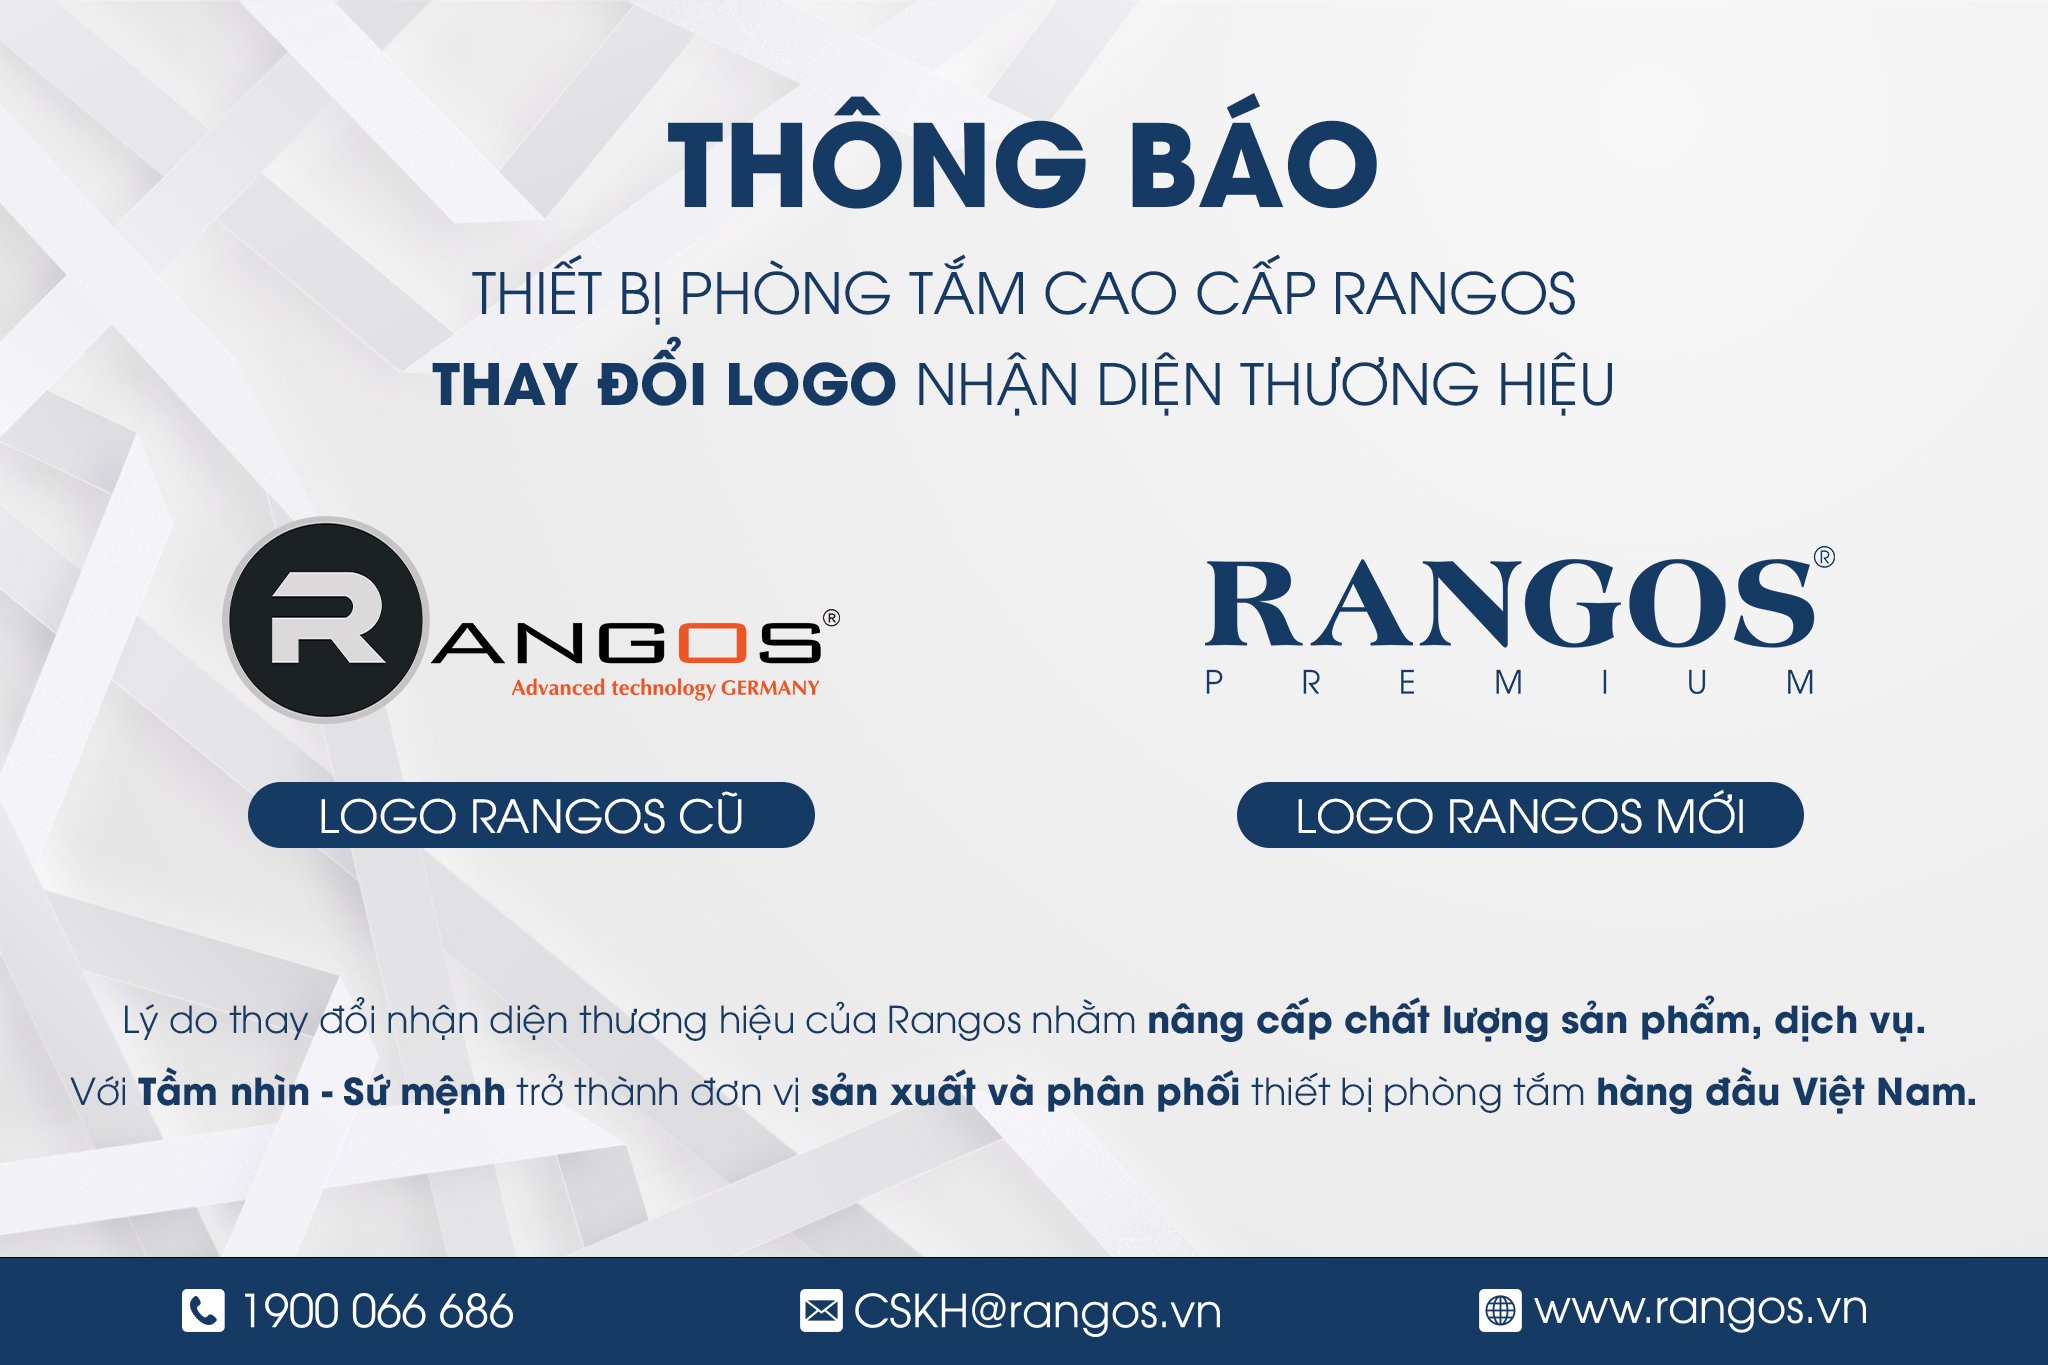 uploads/bai-tin-tuc-2022/2023/thong-bao-thay-doi-logo-thuong-hieu-rangos/thông báo thay đổi logo rangos.jpg